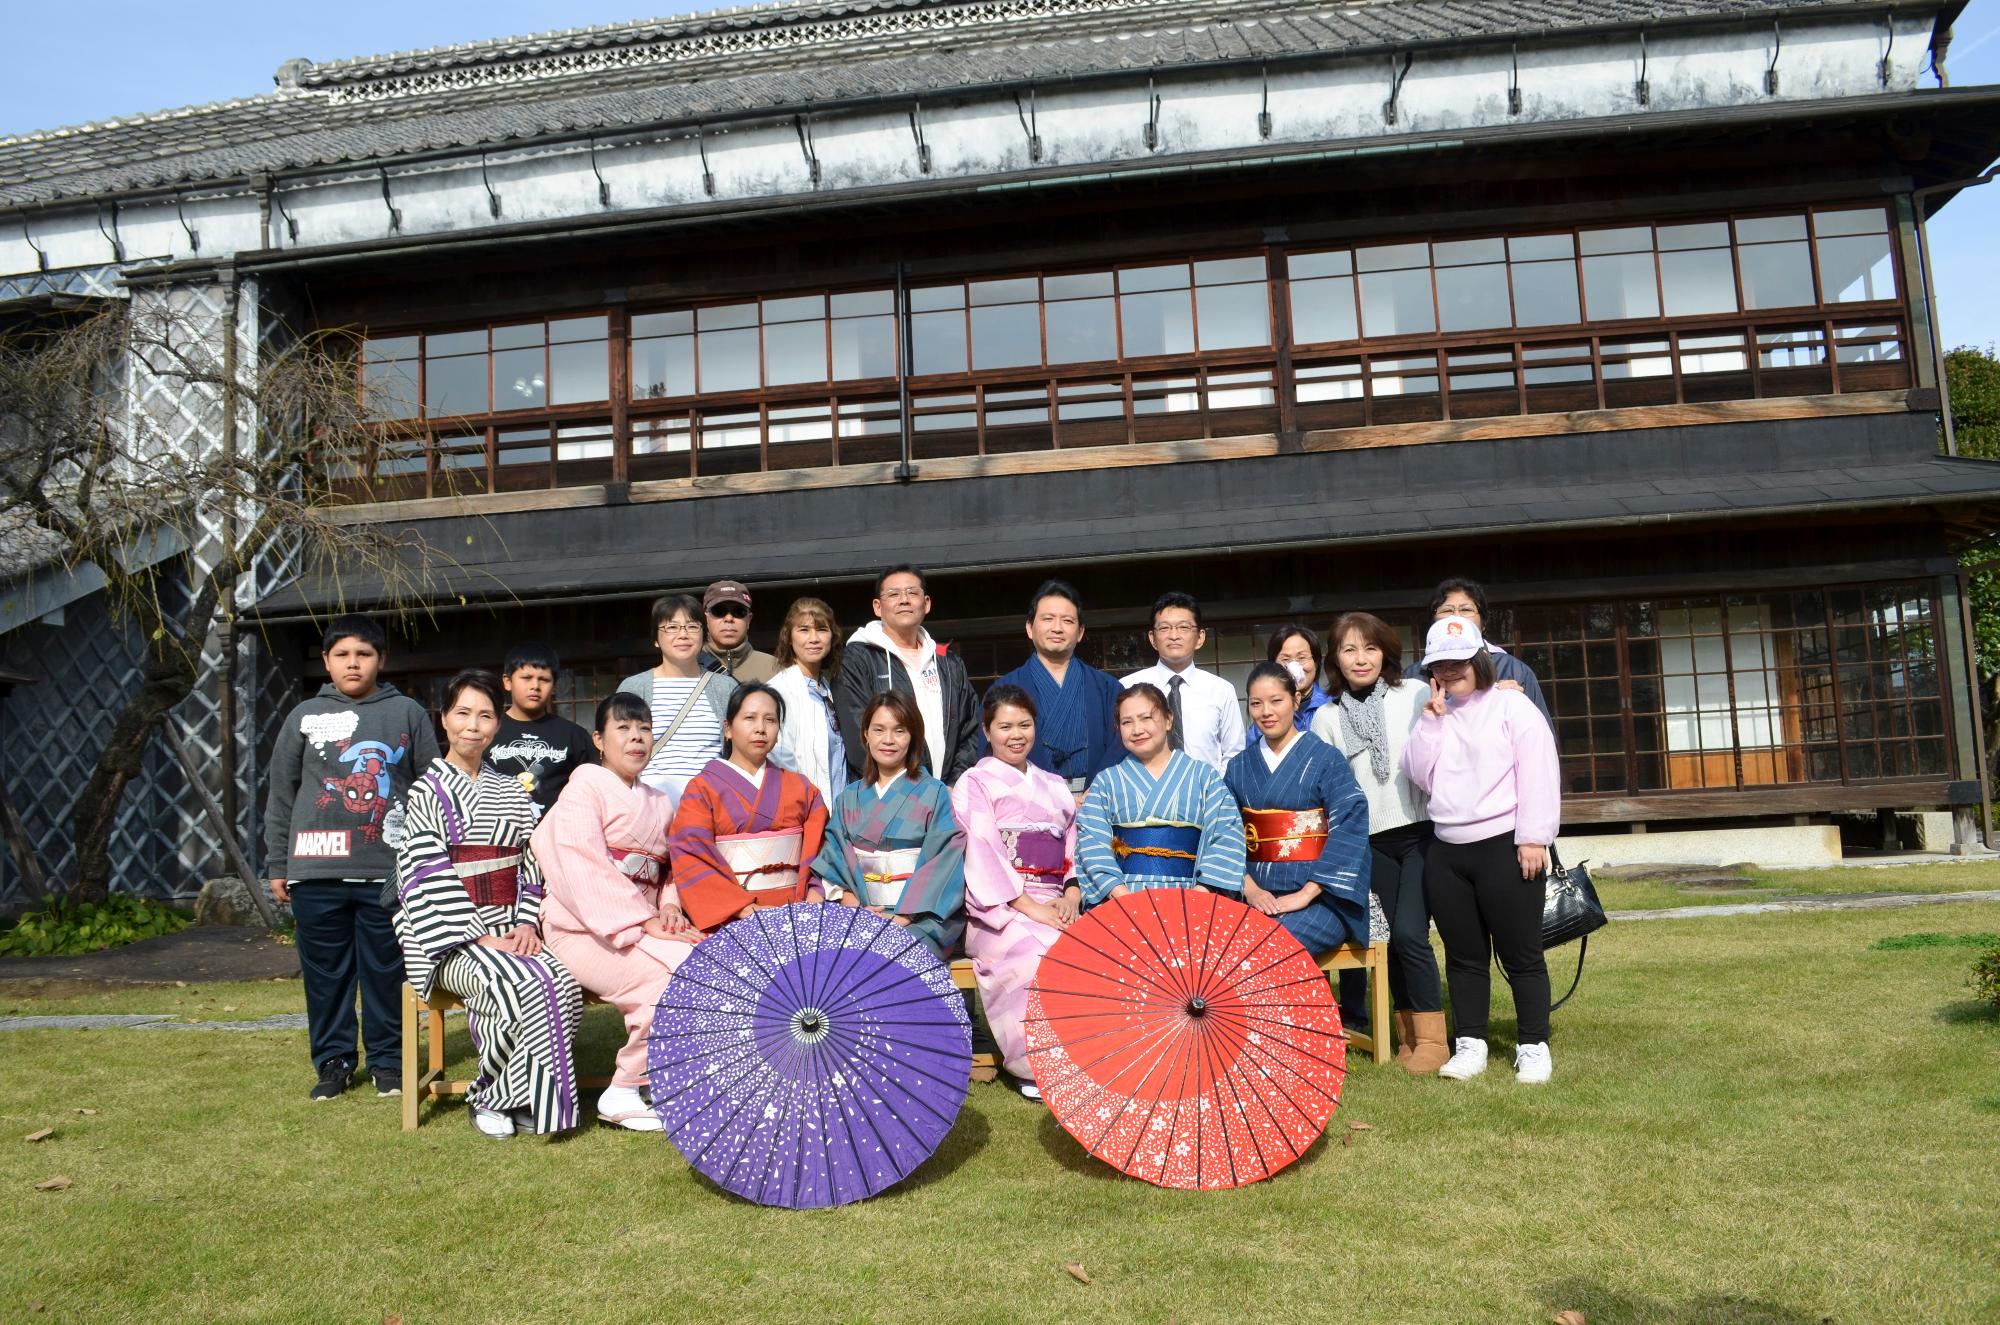 大きな2階建ての日本家屋を背景に、着物を着た参加者達が2つの和傘が置かれた後ろで集合写真を撮っている写真